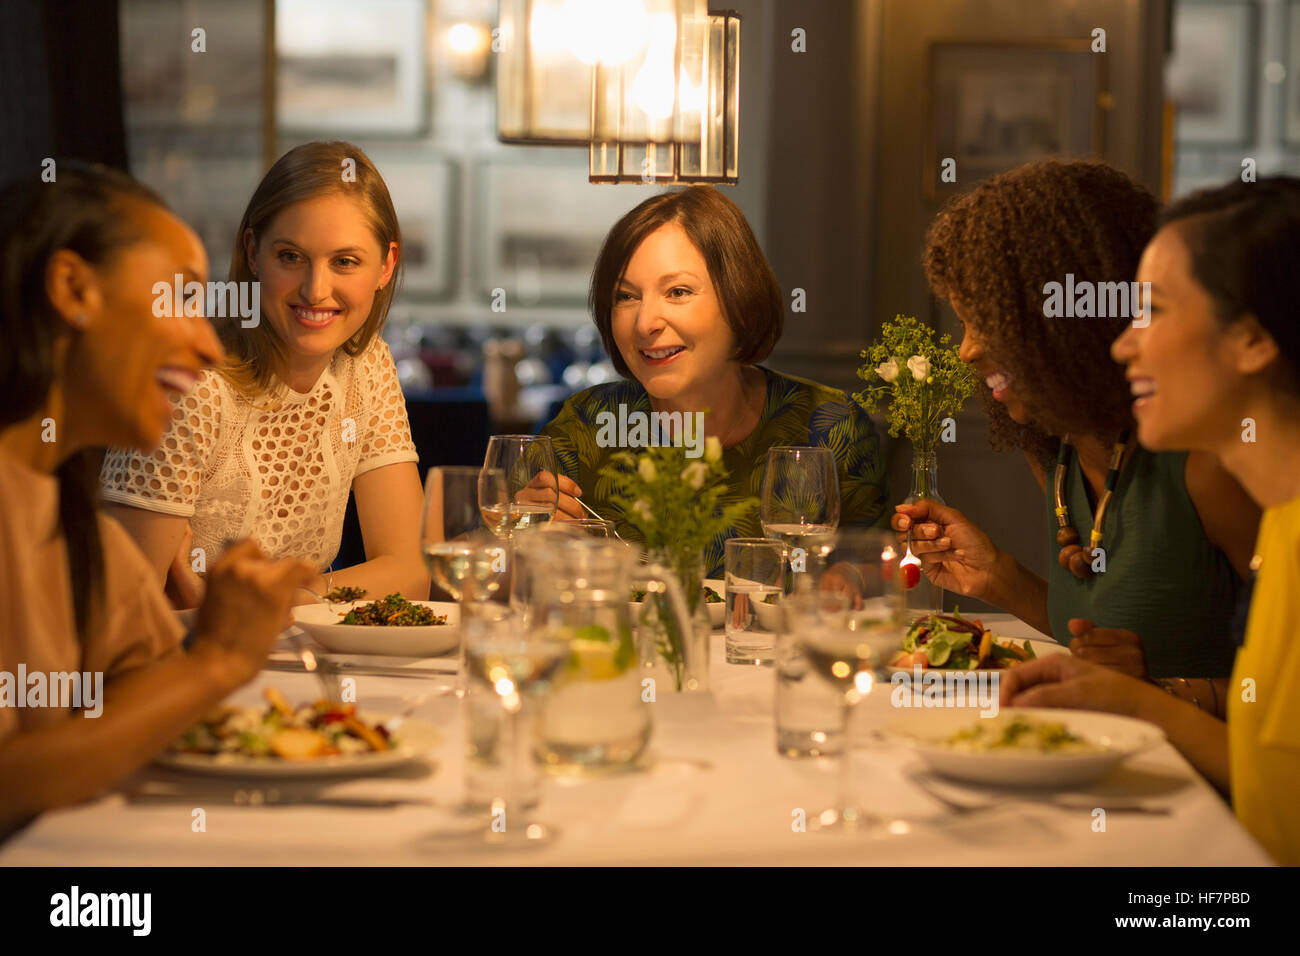 Smiling women friends dîner au restaurant table Banque D'Images